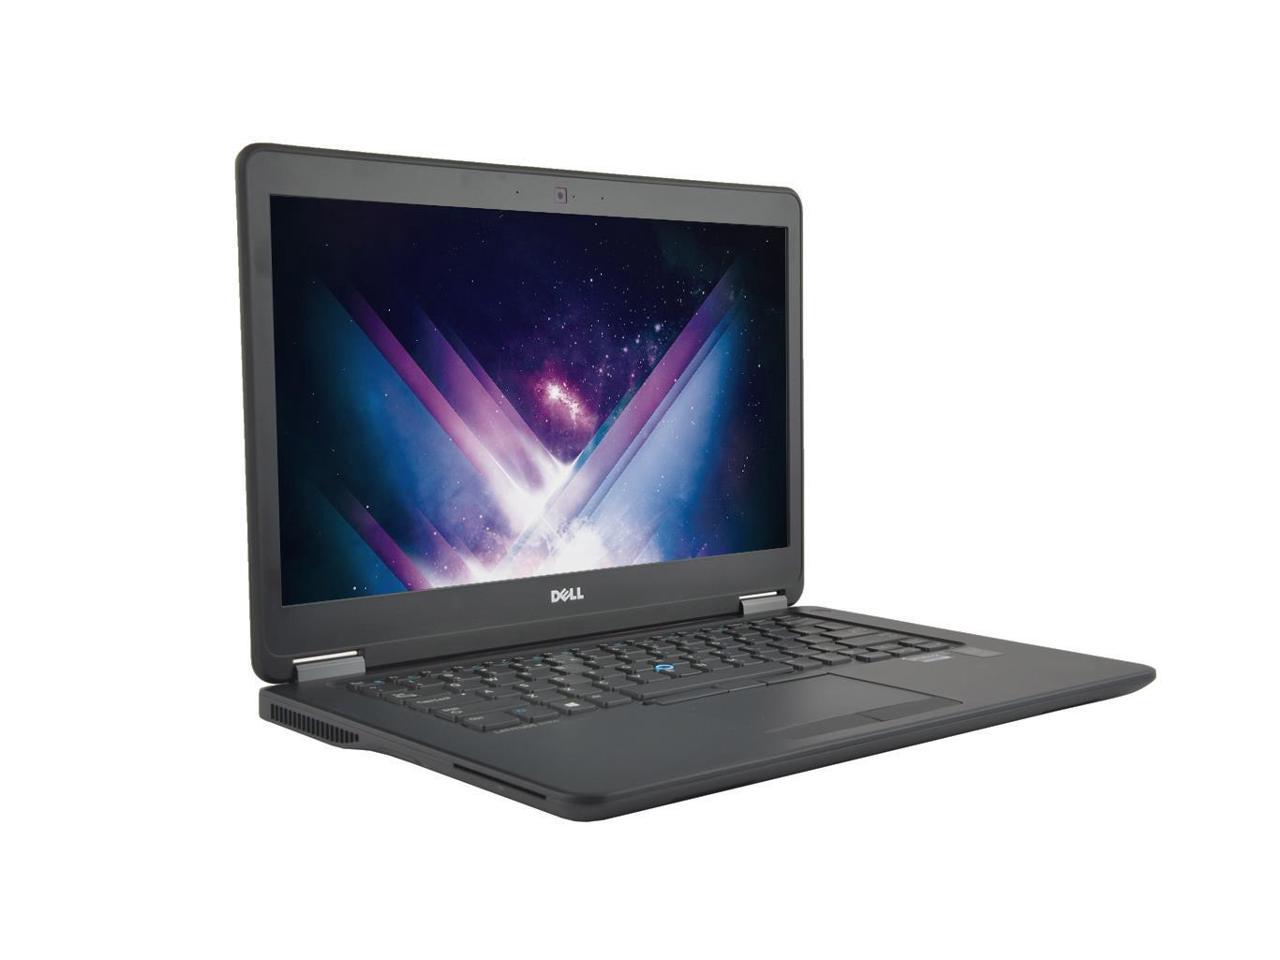 Dell Latitude E7450 14" Laptop, Intel Core i5 5300U 2.3Ghz, 8GB DDR3, 128GB SSD Hard Drive, HDMI, Webcam, Windows 10 - Minor Wear